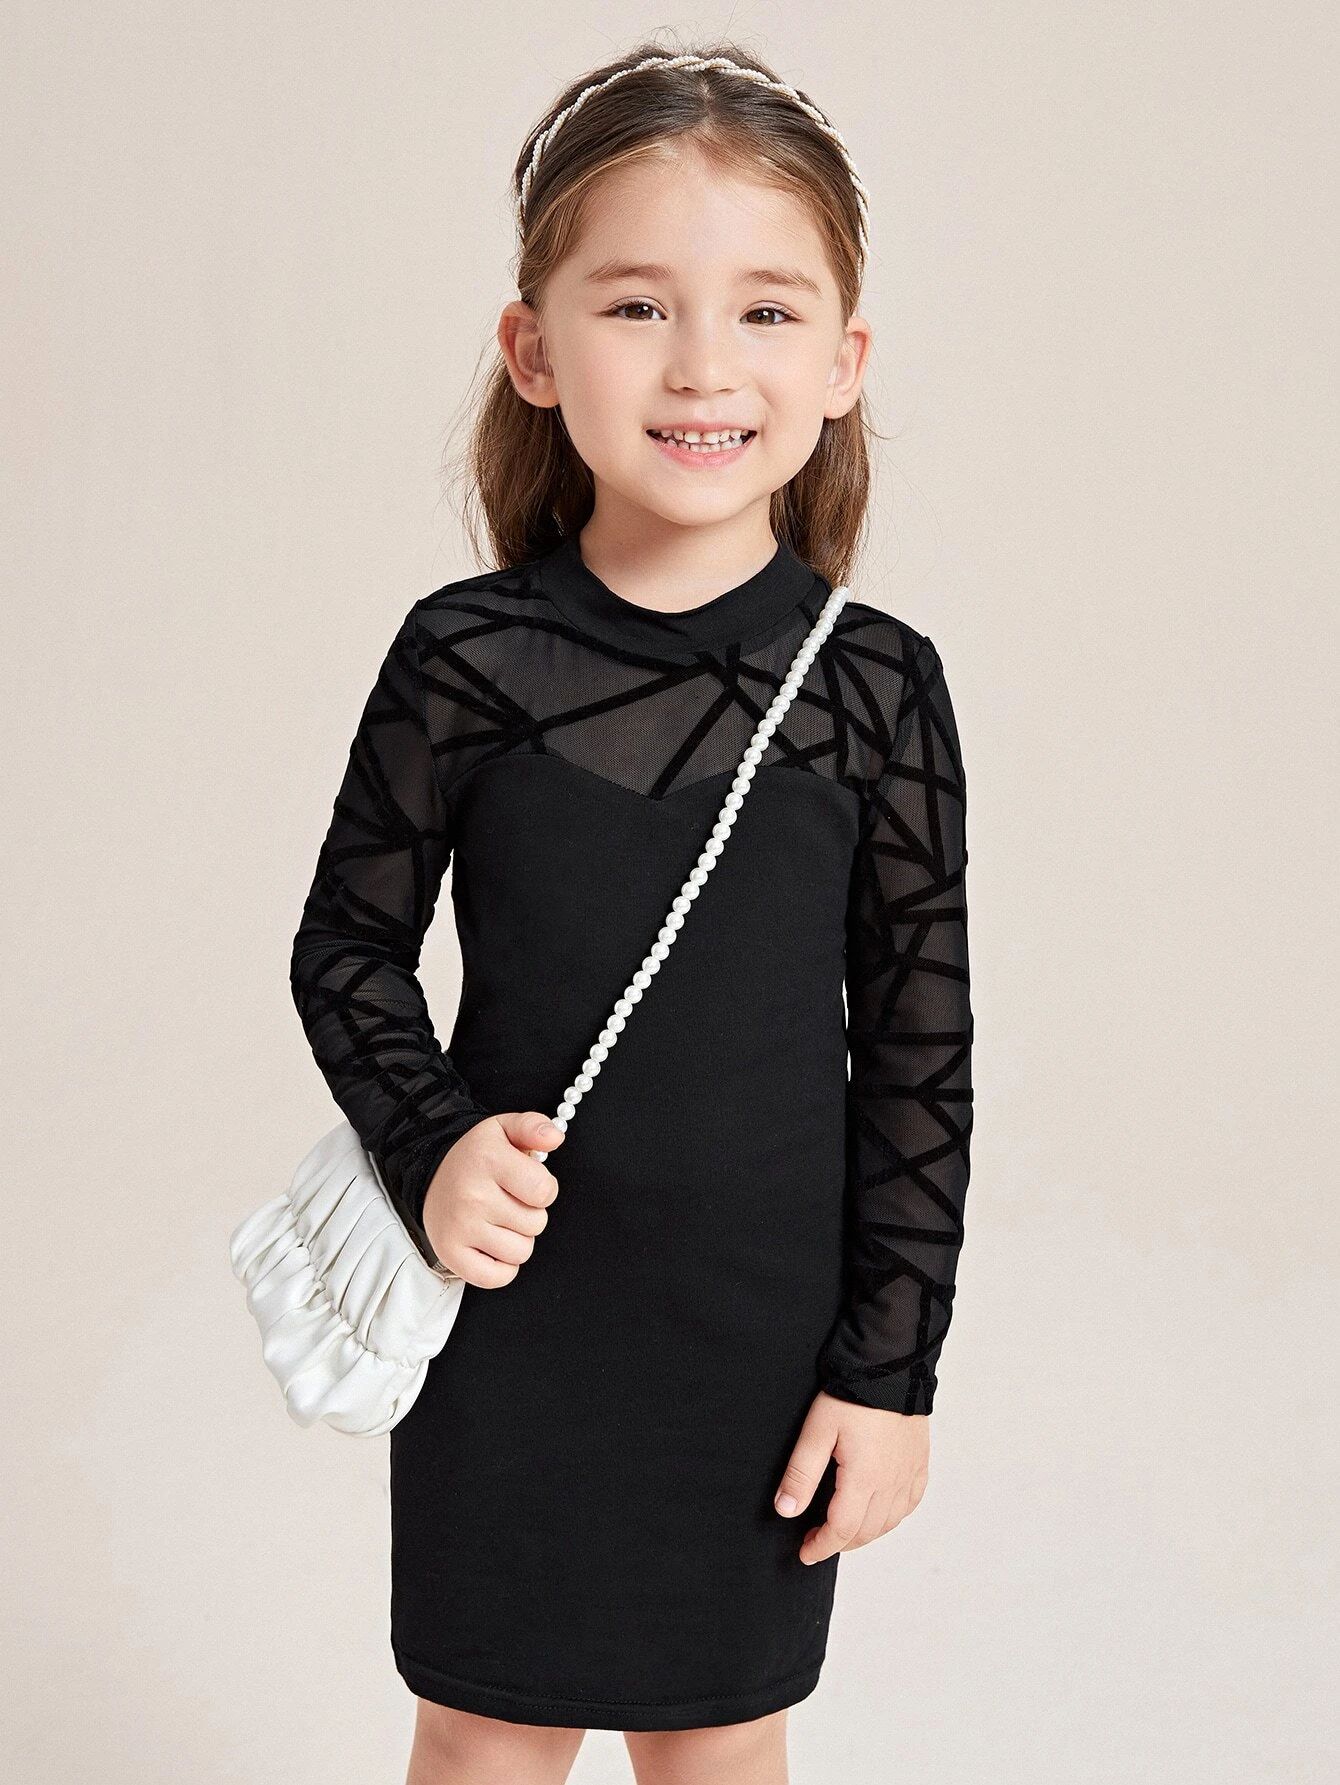 SHEIN Kids FANZEY Toddler Girls Geo Mesh Insert Mock Neck Fitted Dress | SHEIN